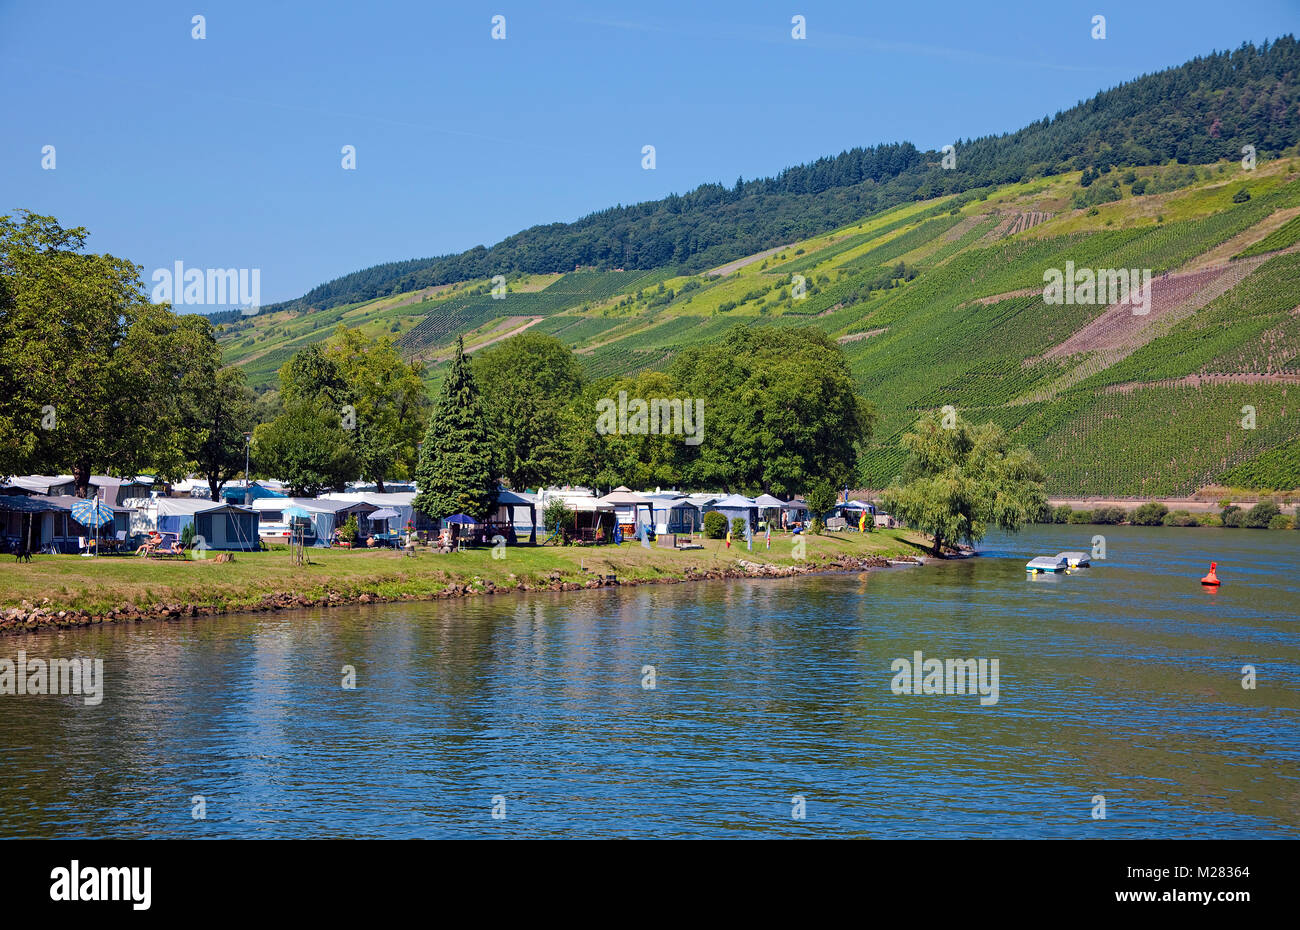 Campingplatz am Flußufer der Wolf, Traben-Trarbach, Mosel, Rheinland-Pfalz, Deutschland, Europa Stockfoto